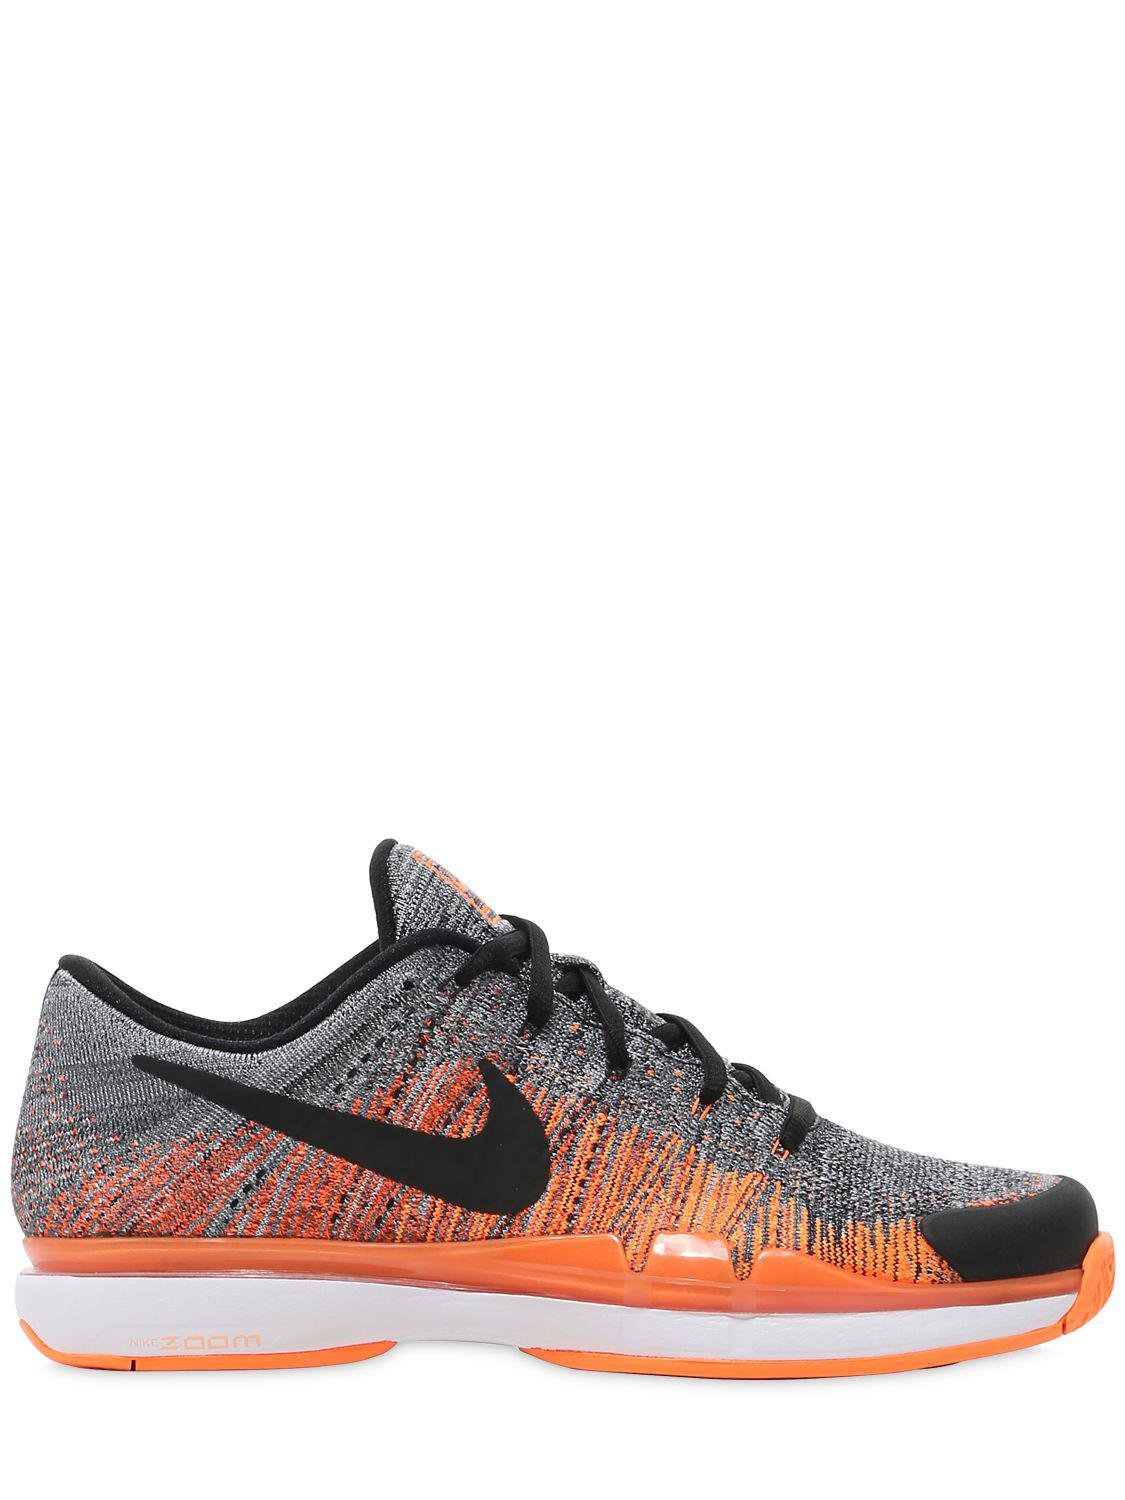 Nike Federer Zoom Vapor 9.5 Tennis Sneakers in Grey/Orange (Gray ... سع